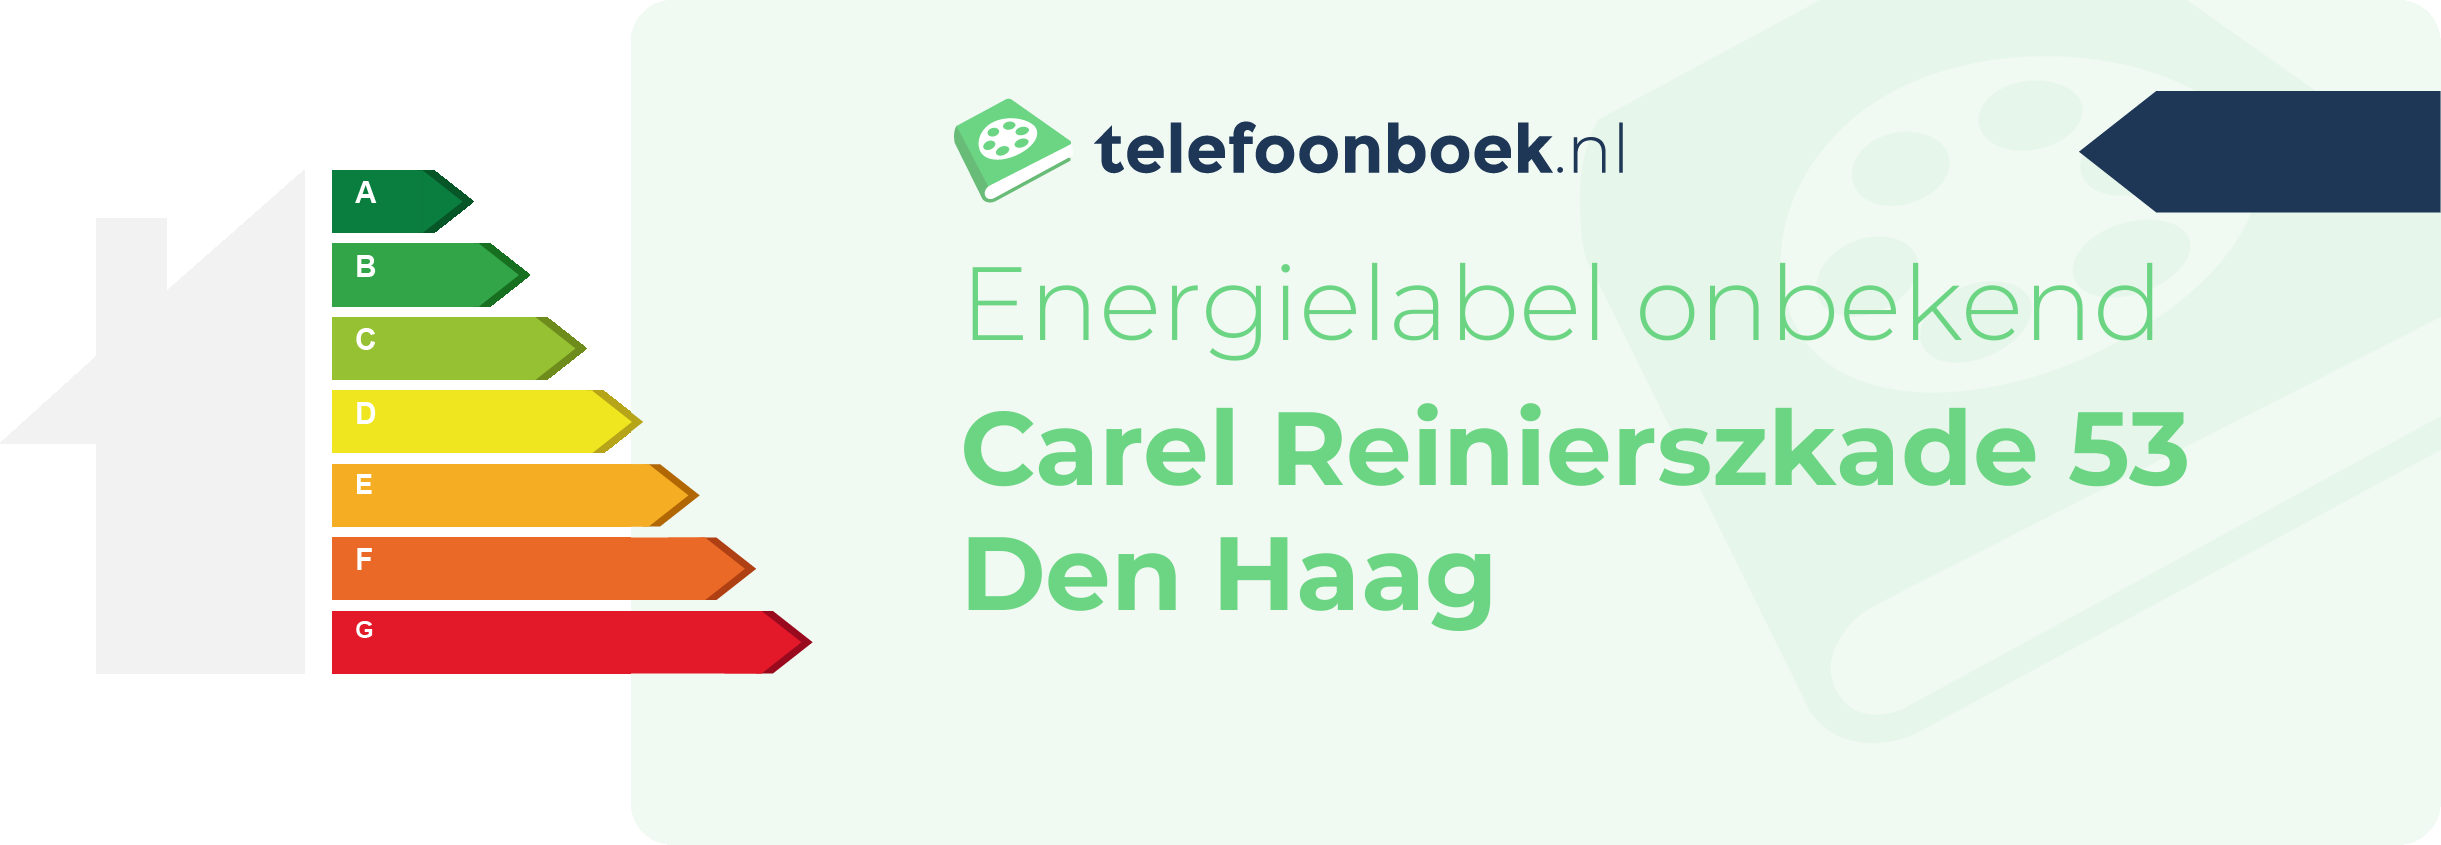 Energielabel Carel Reinierszkade 53 Den Haag